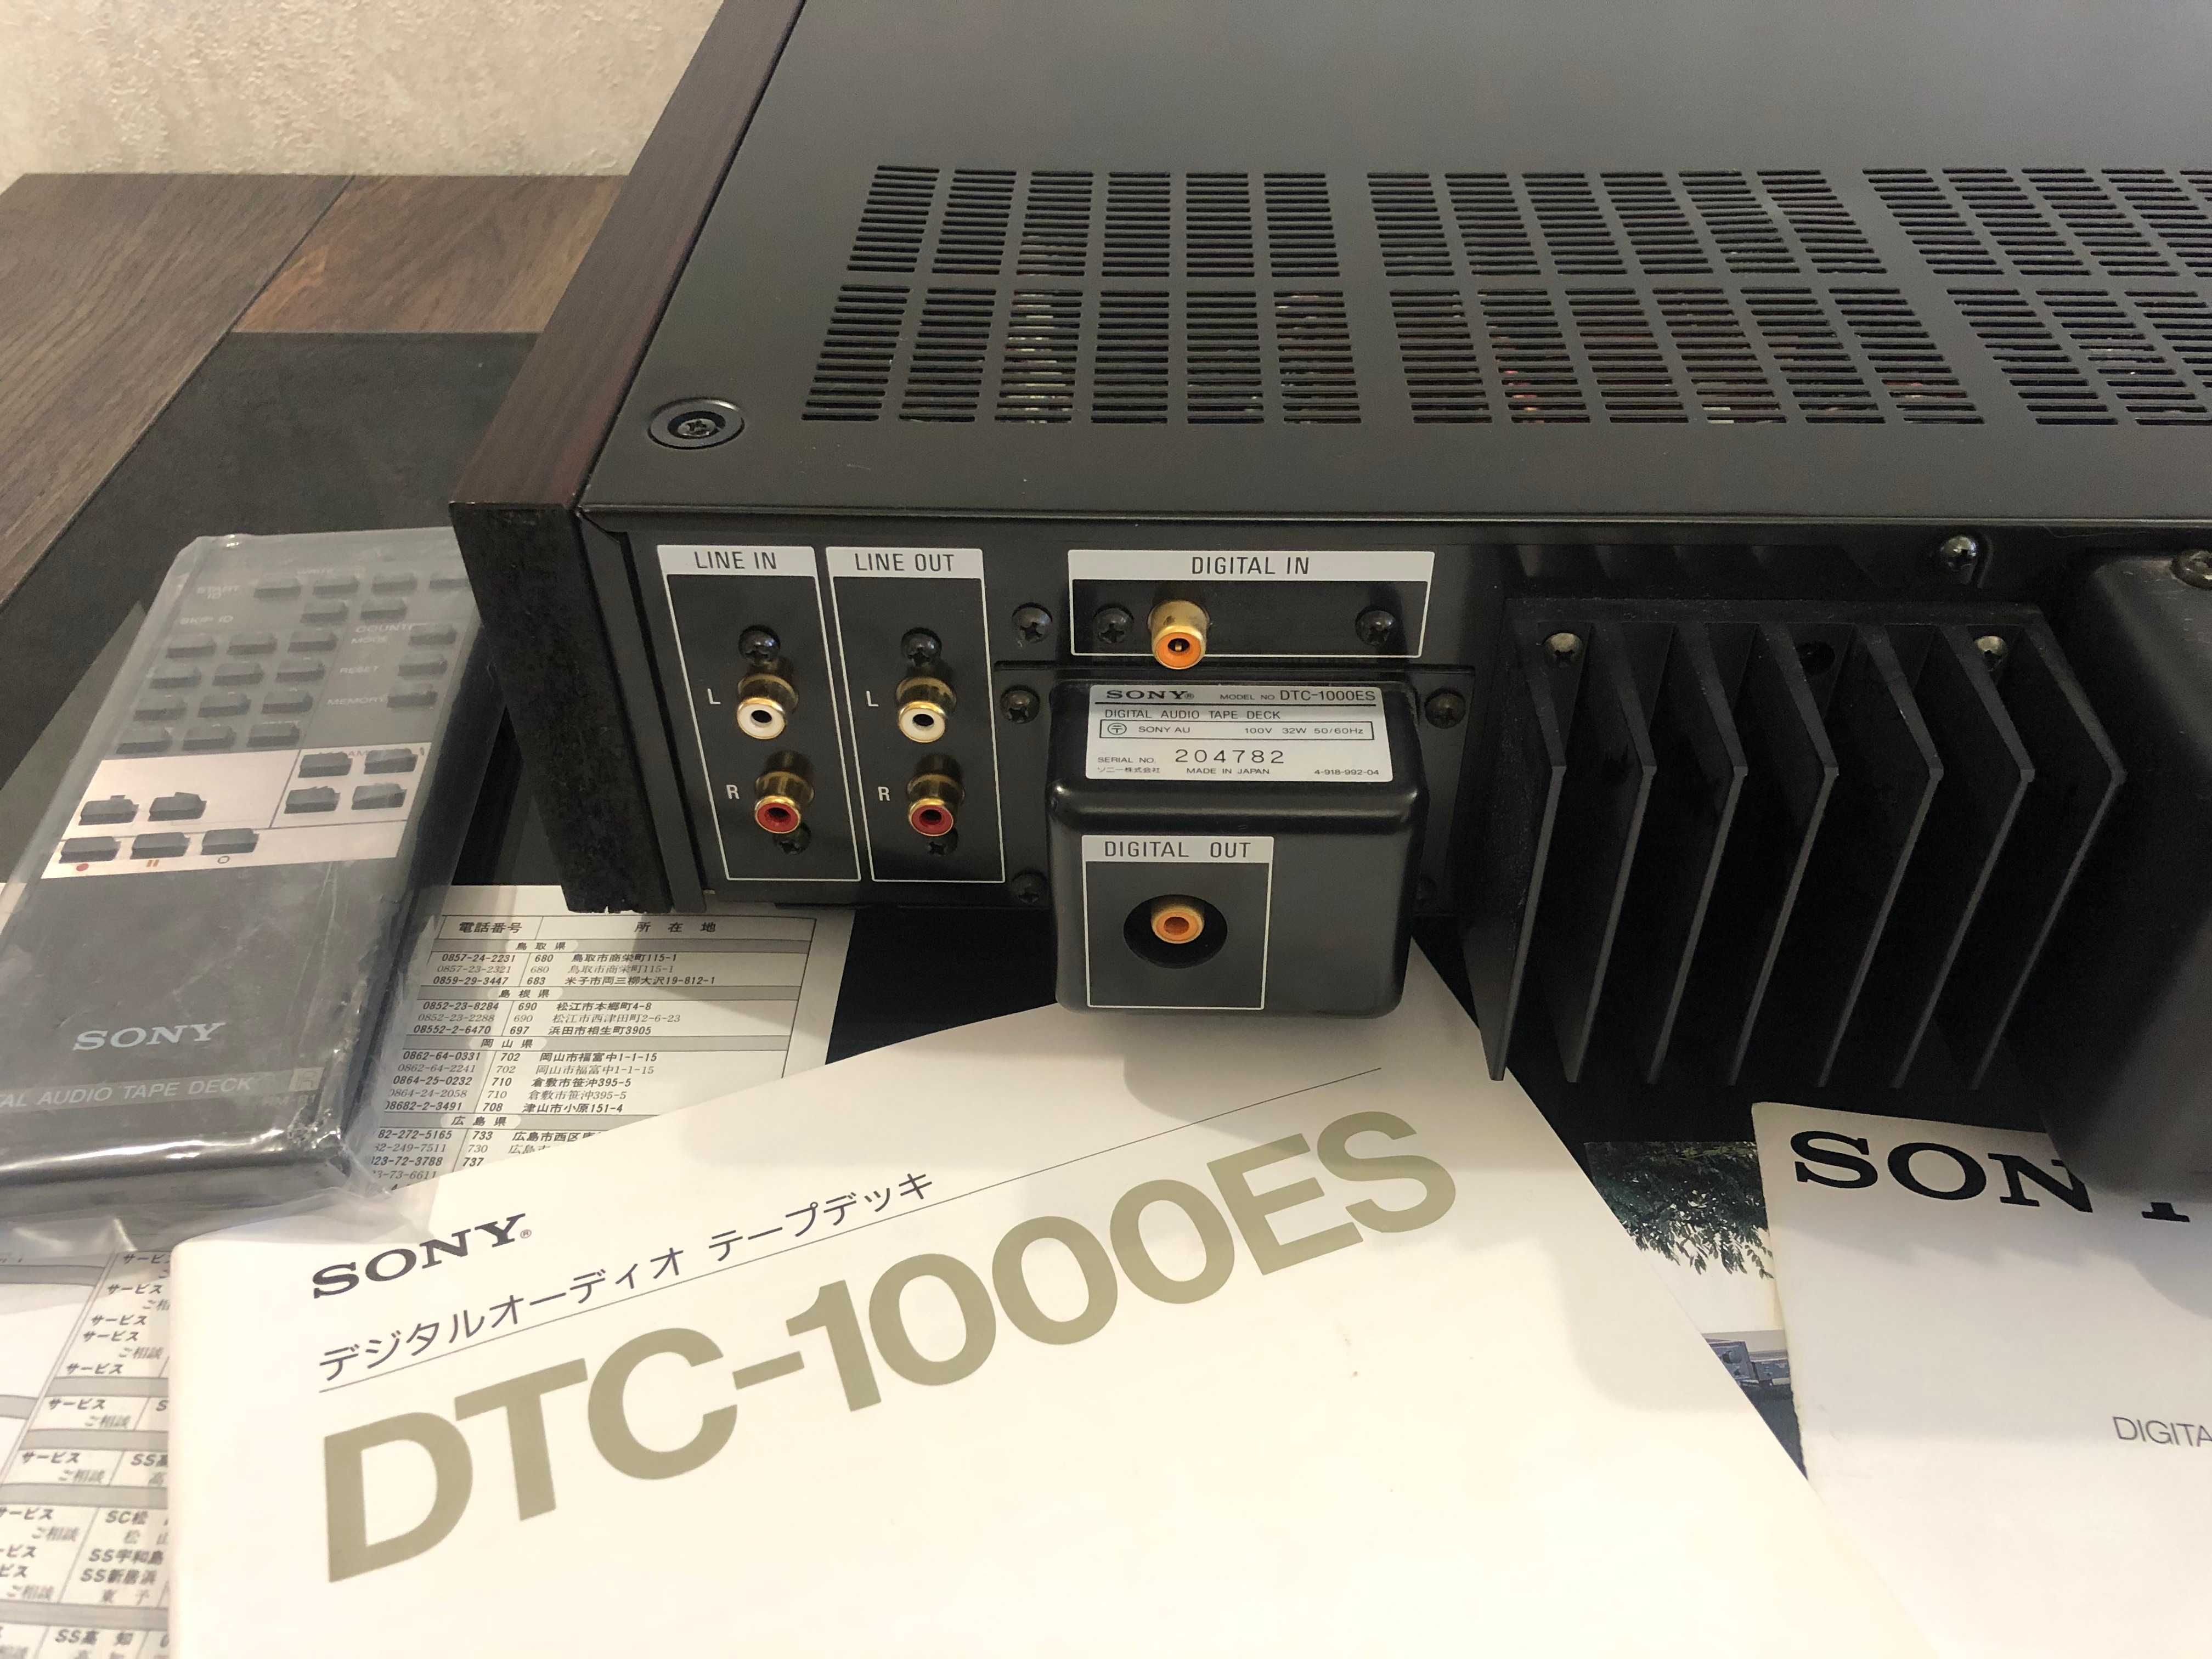 DAT магнитофон SONY DTC-1000ES